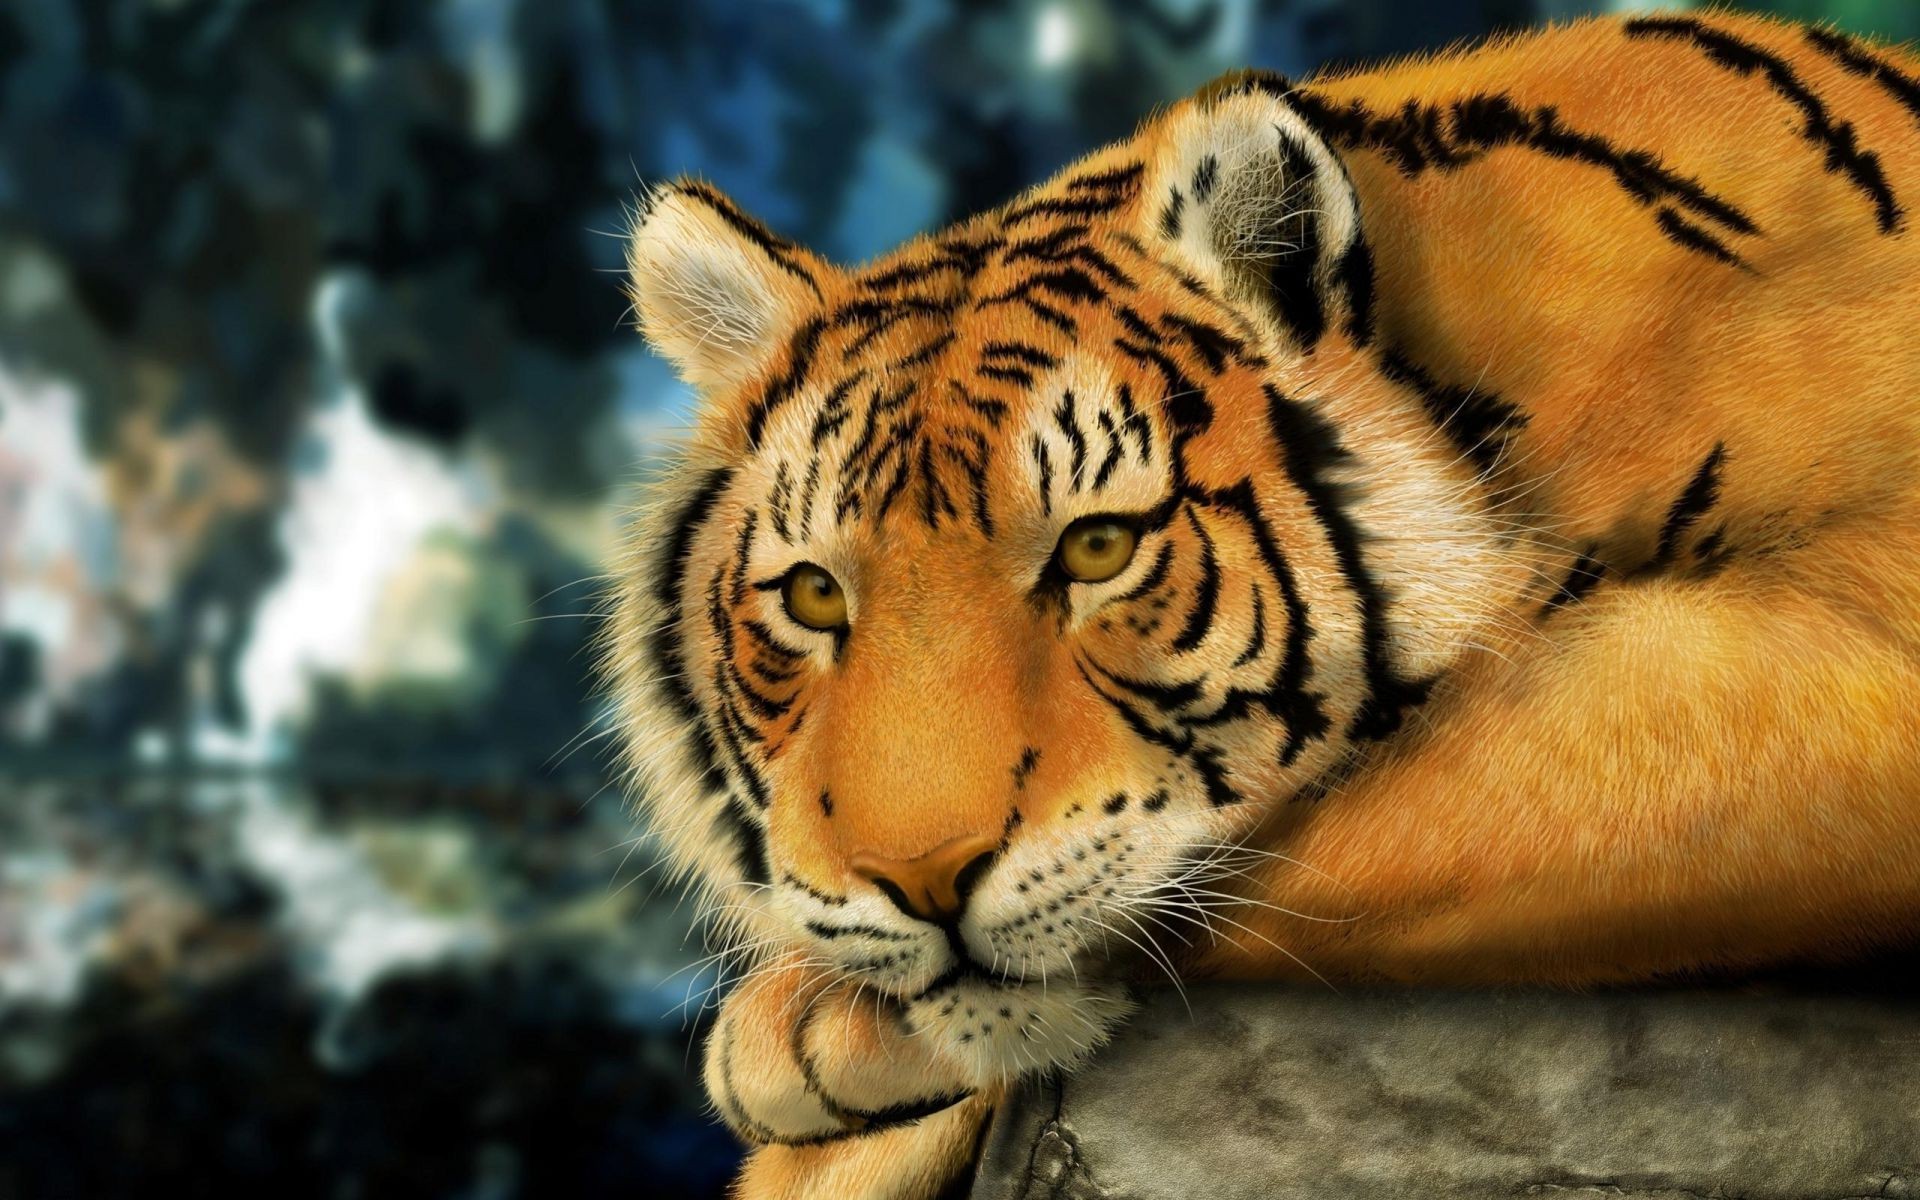 тигры тигр дикой природы кошка млекопитающее животное хищник зоопарк полоса опасность охотник природа дикий джунгли портрет агрессии мех